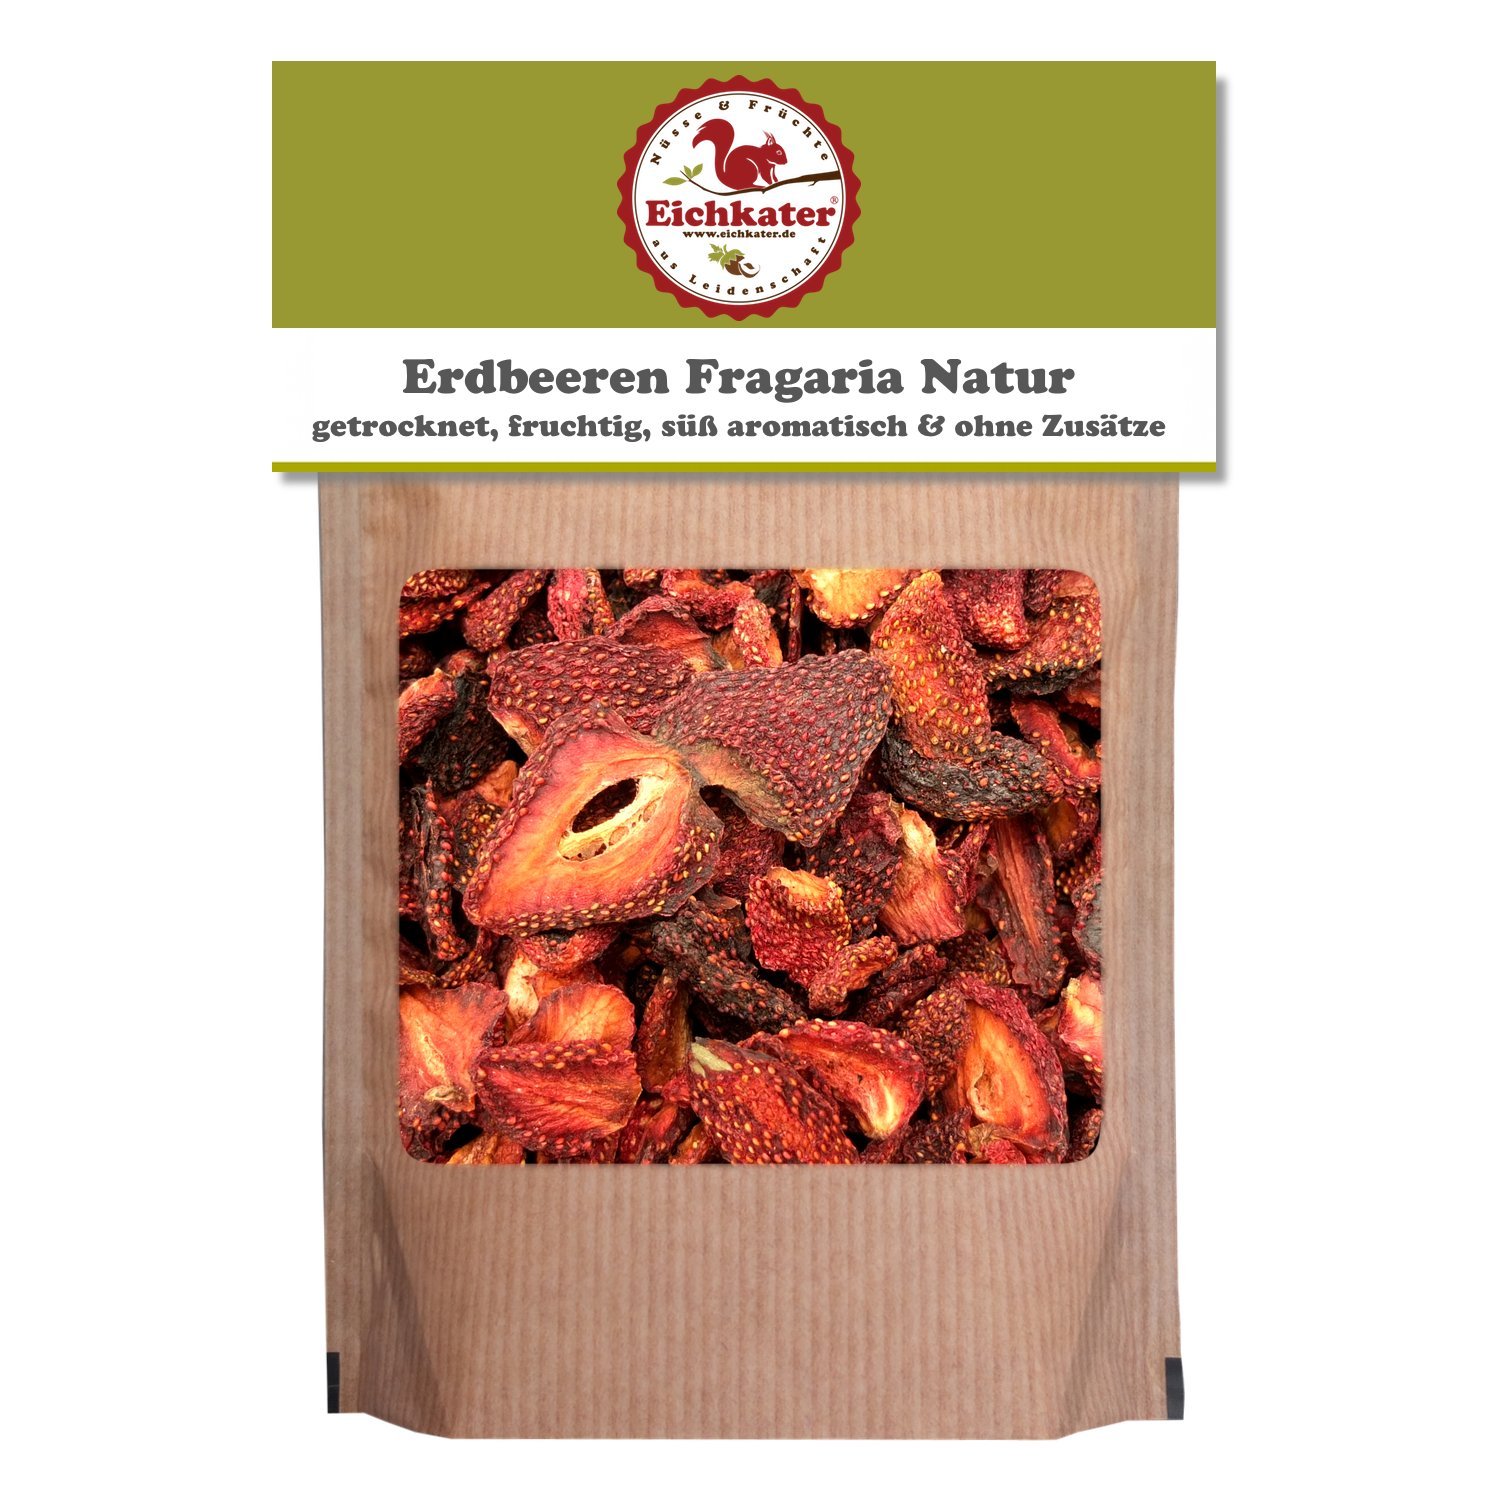 Eichkater getrocknete Erdbeeren Fragaria Natur ohne Zusätze 6er-Pack (6x750 g)